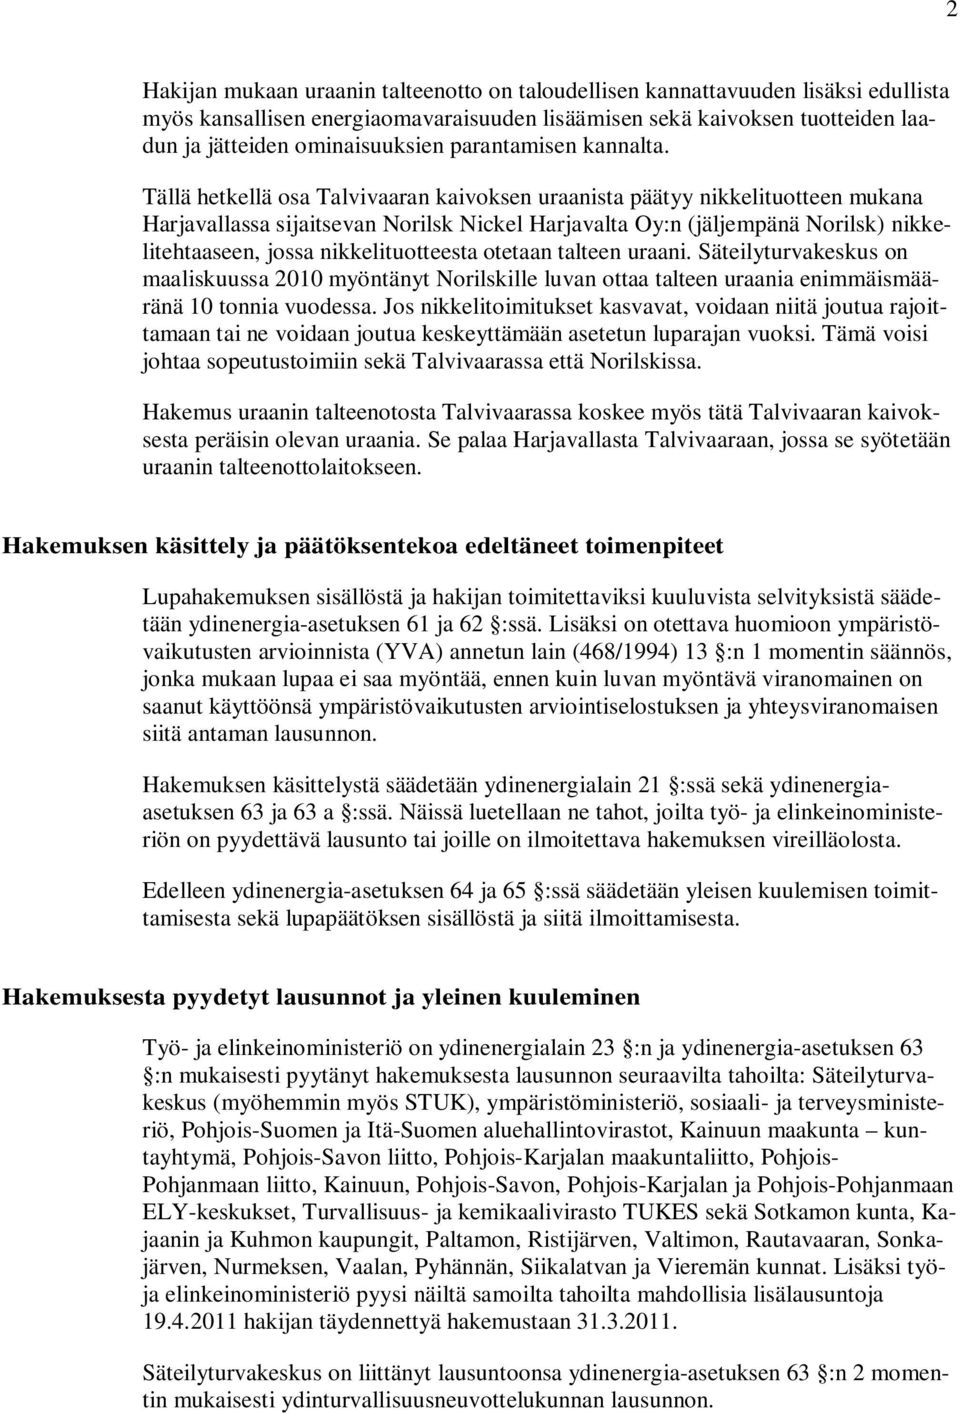 Tällä hetkellä osa Talvivaaran kaivoksen uraanista päätyy nikkelituotteen mukana Harjavallassa sijaitsevan Norilsk Nickel Harjavalta Oy:n (jäljempänä Norilsk) nikkelitehtaaseen, jossa